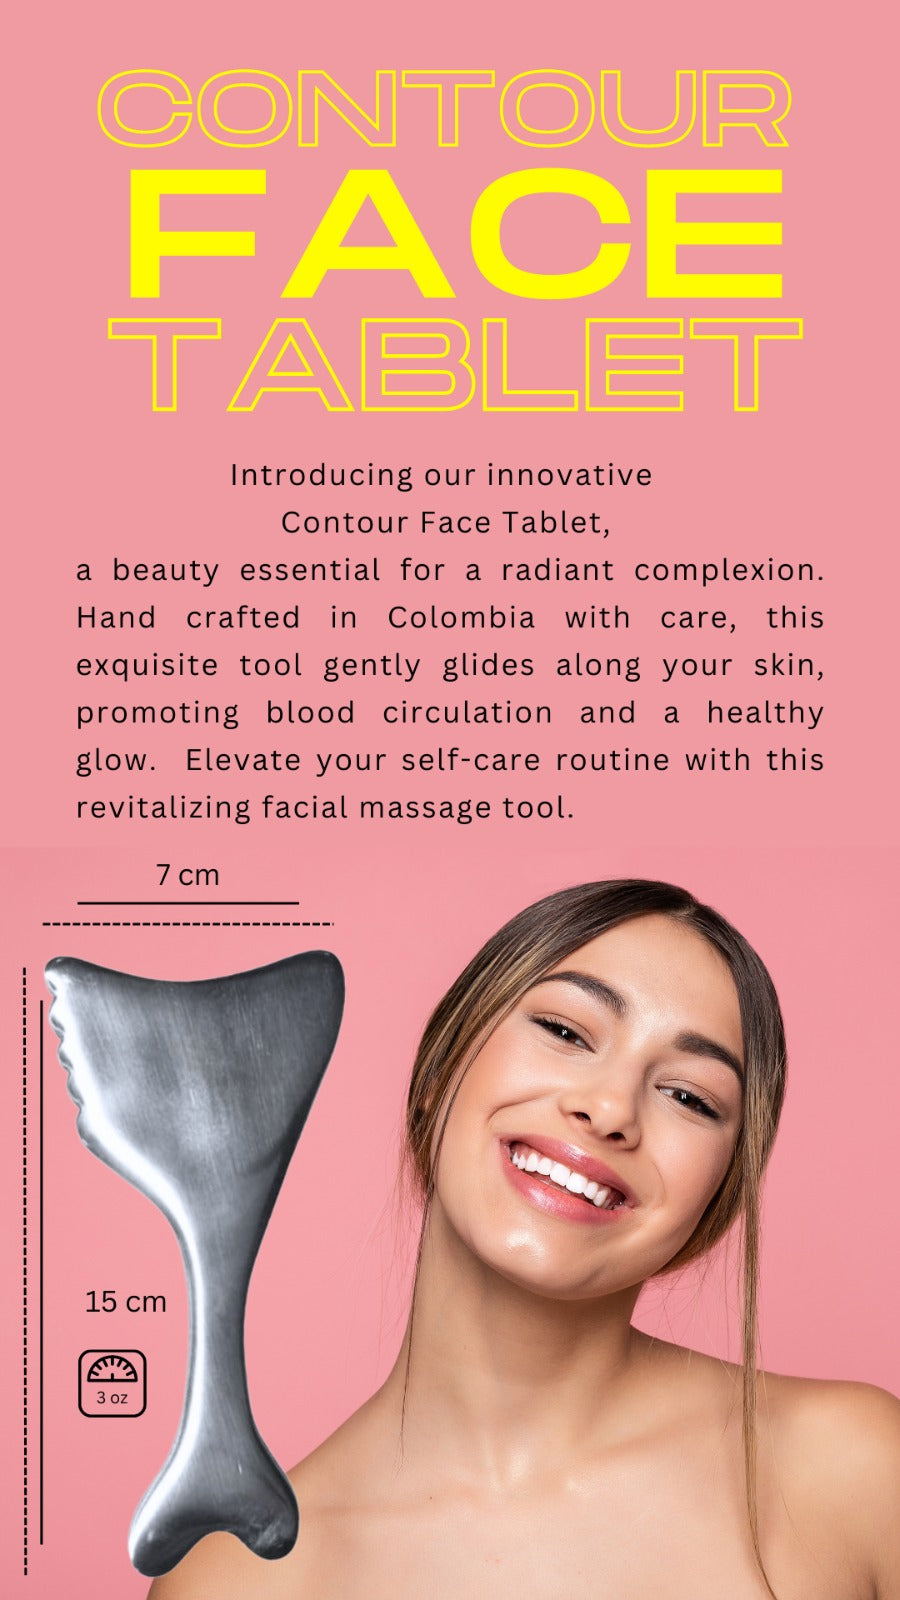 Contour Face Tablet